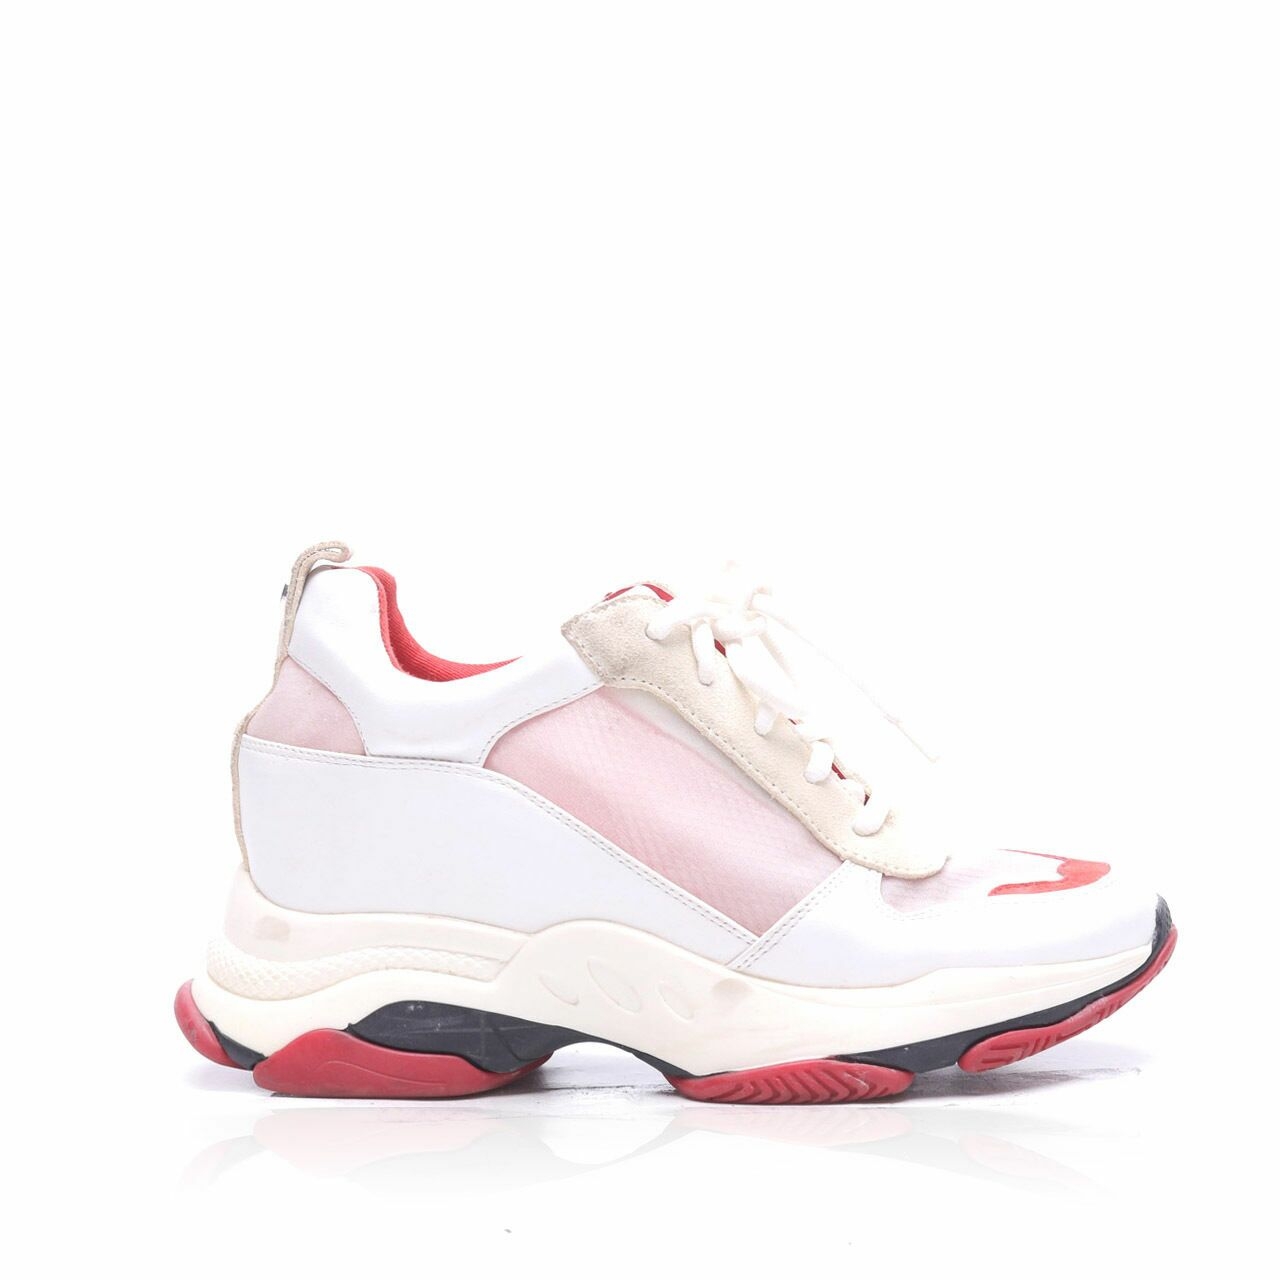 Steve Madden Red & White Sneakers